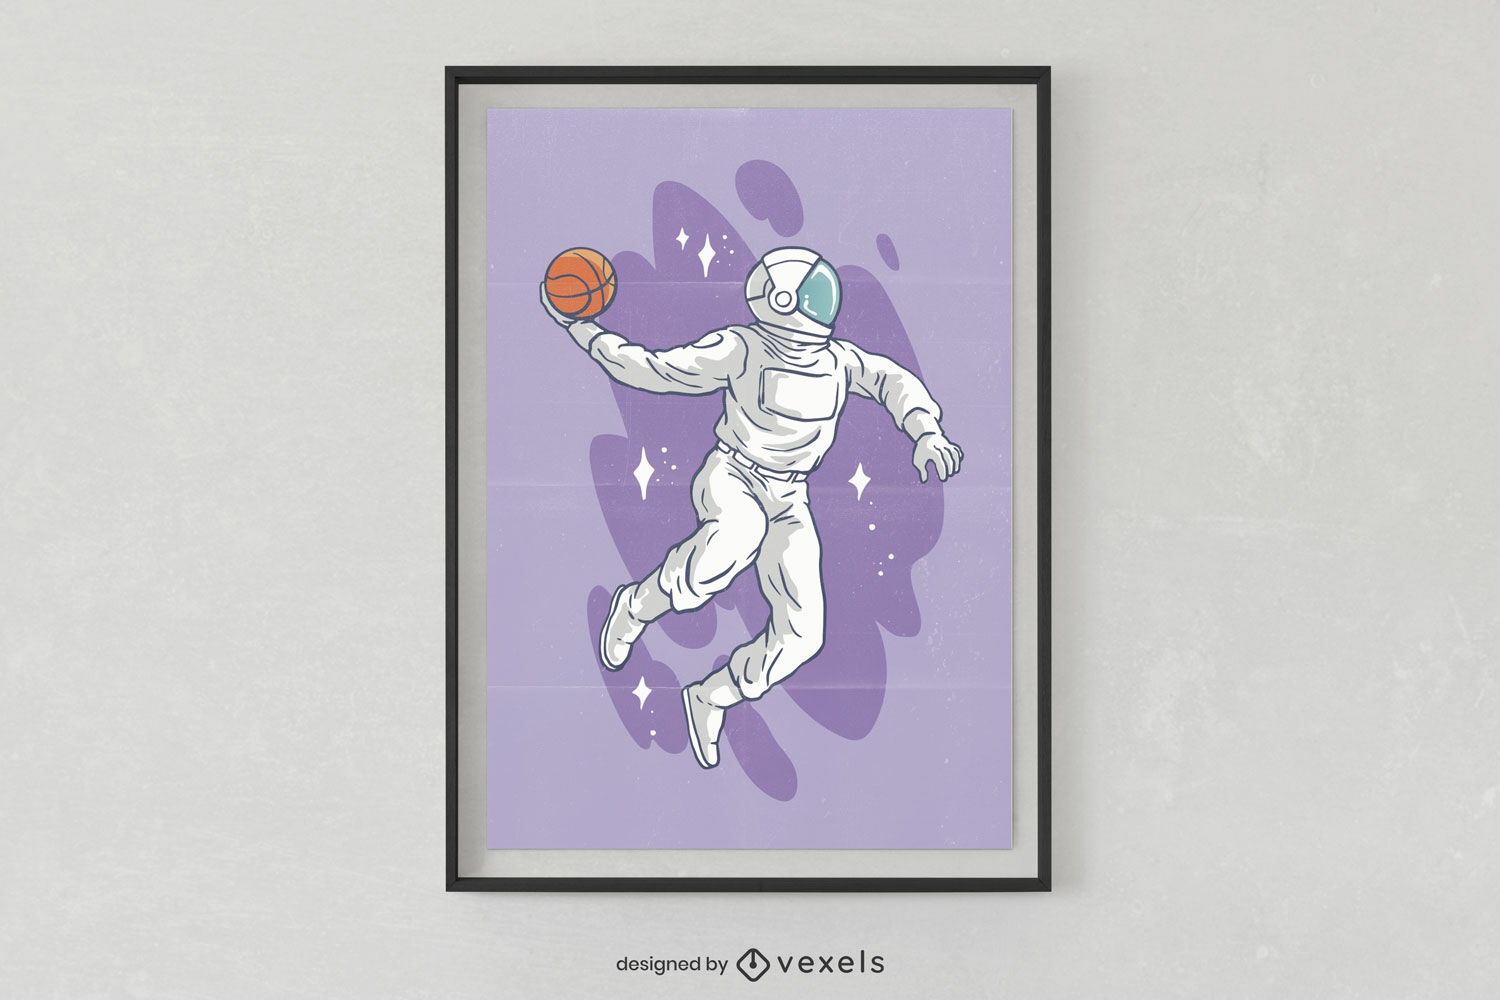 P?ster com um astronauta jogando basquete